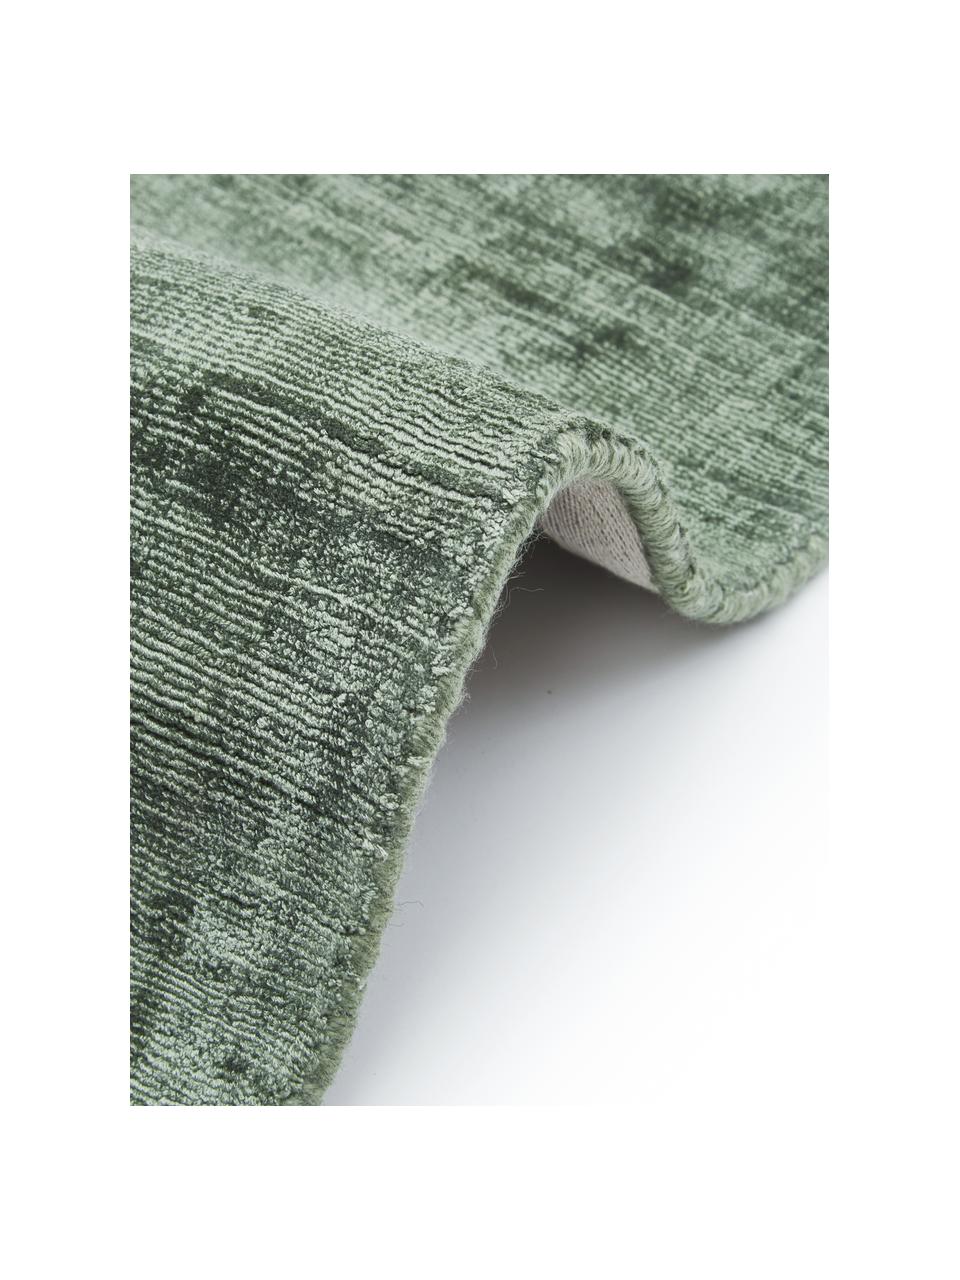 Tappeto in viscosa tessuto a mano Jane, Retro: 100% cotone, Verde, Larg. 160 x Lung. 230 cm  (taglia M)